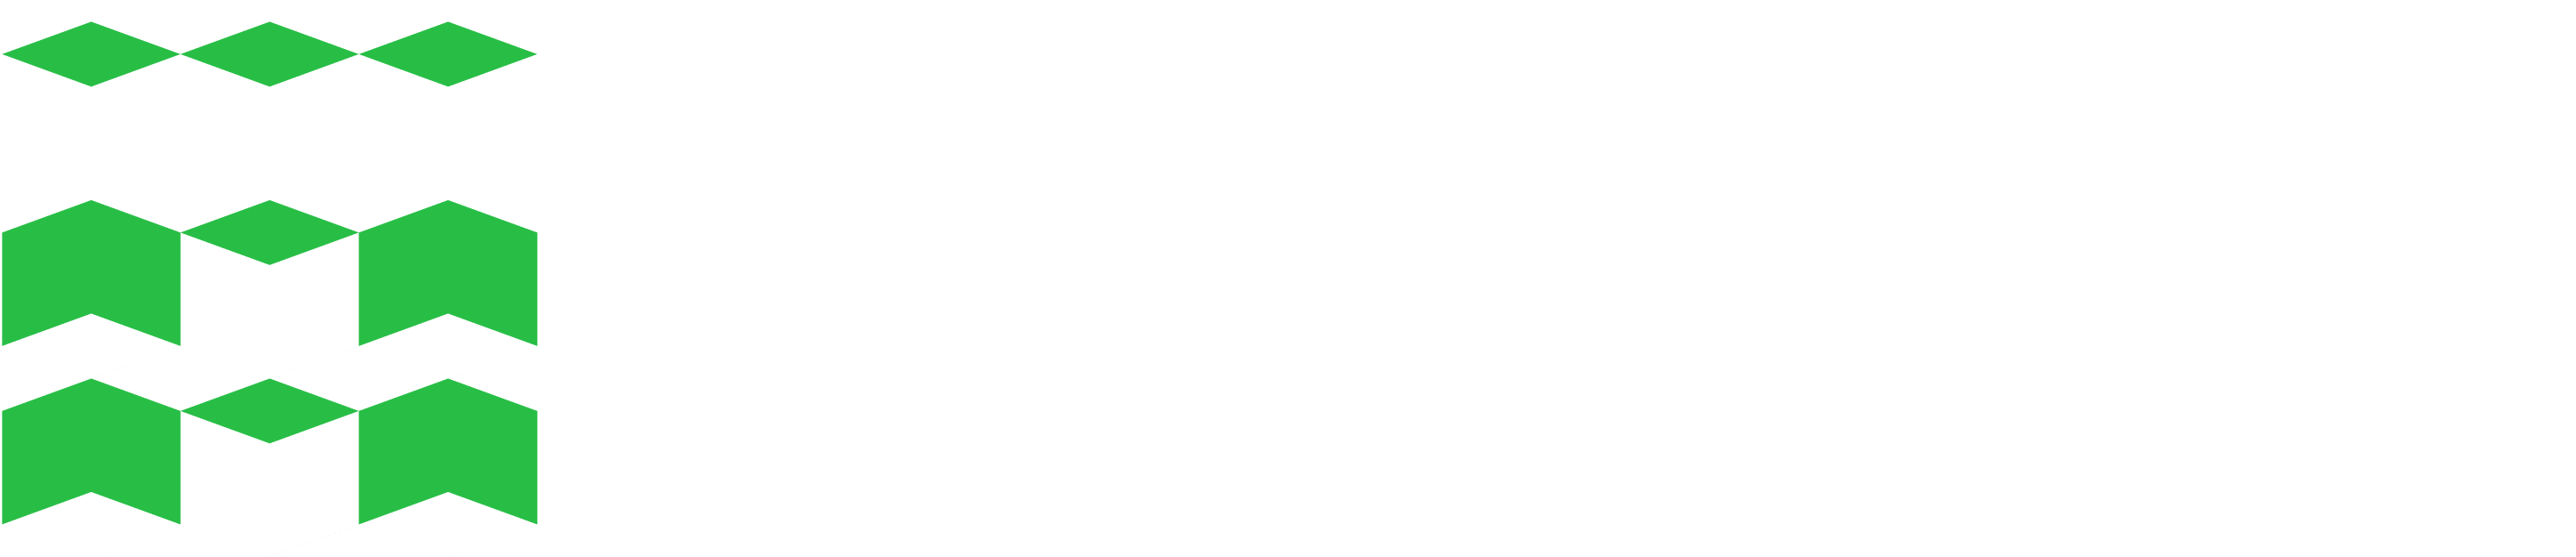 Томский Политхнический Университет